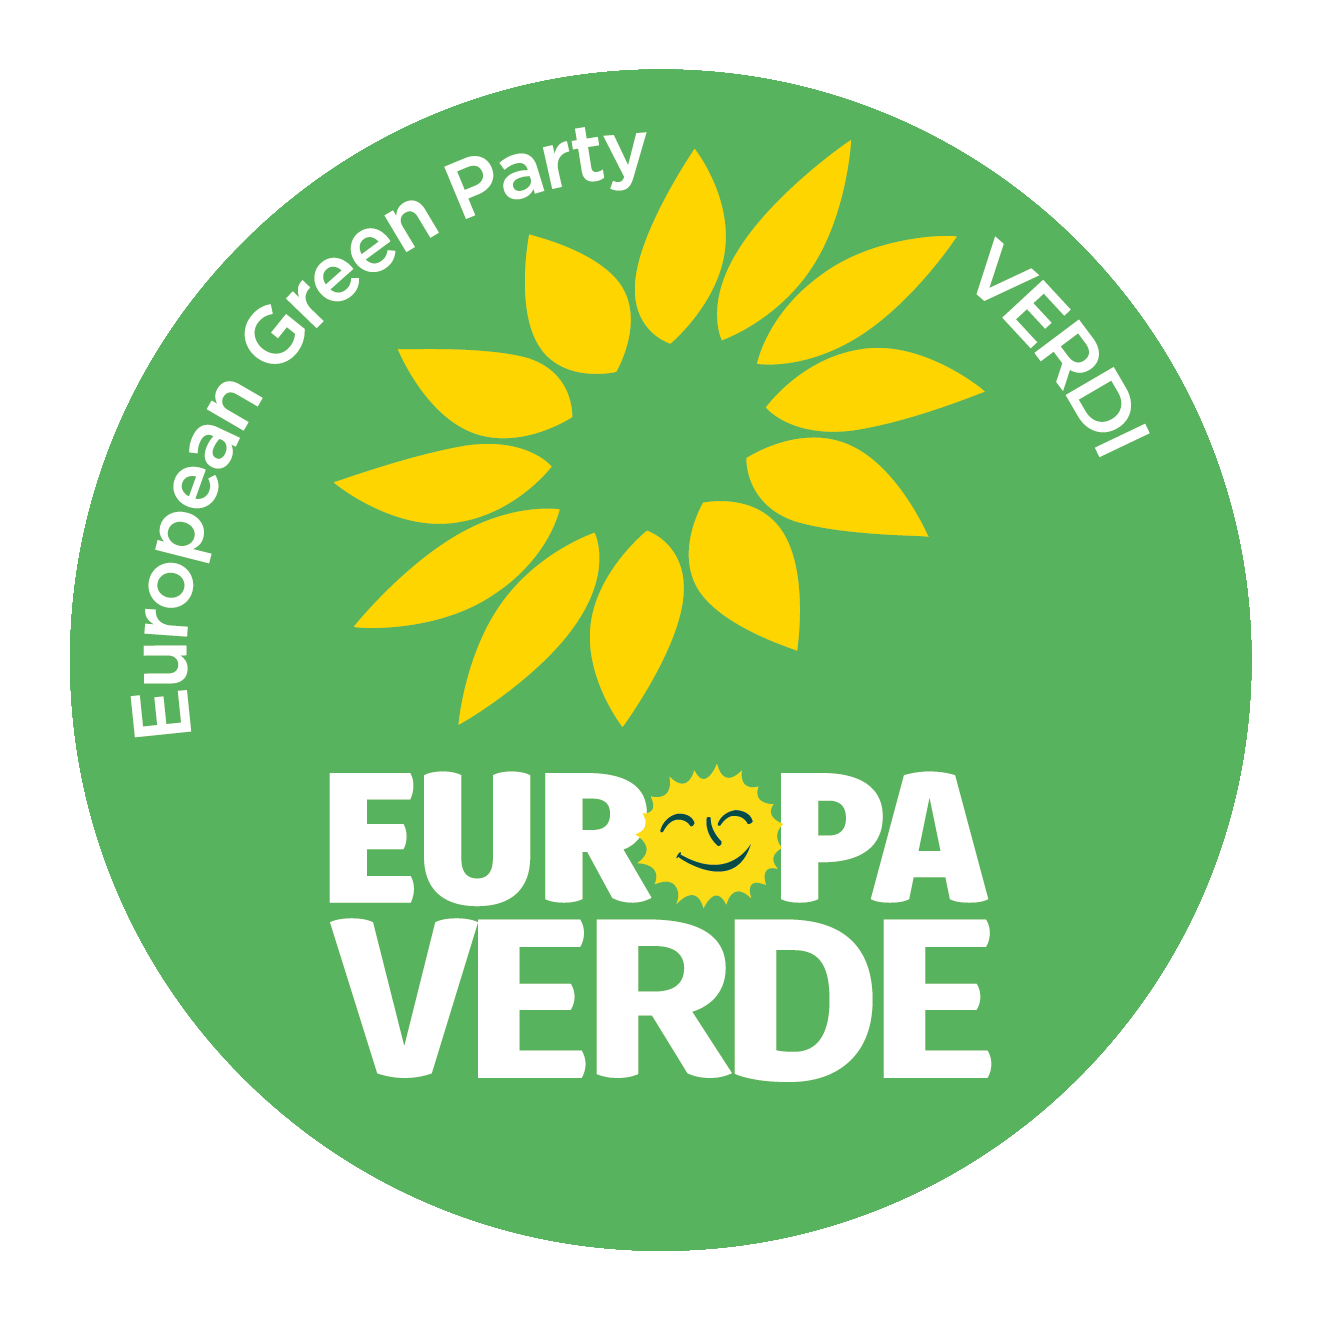 Europa Verde - Verdi